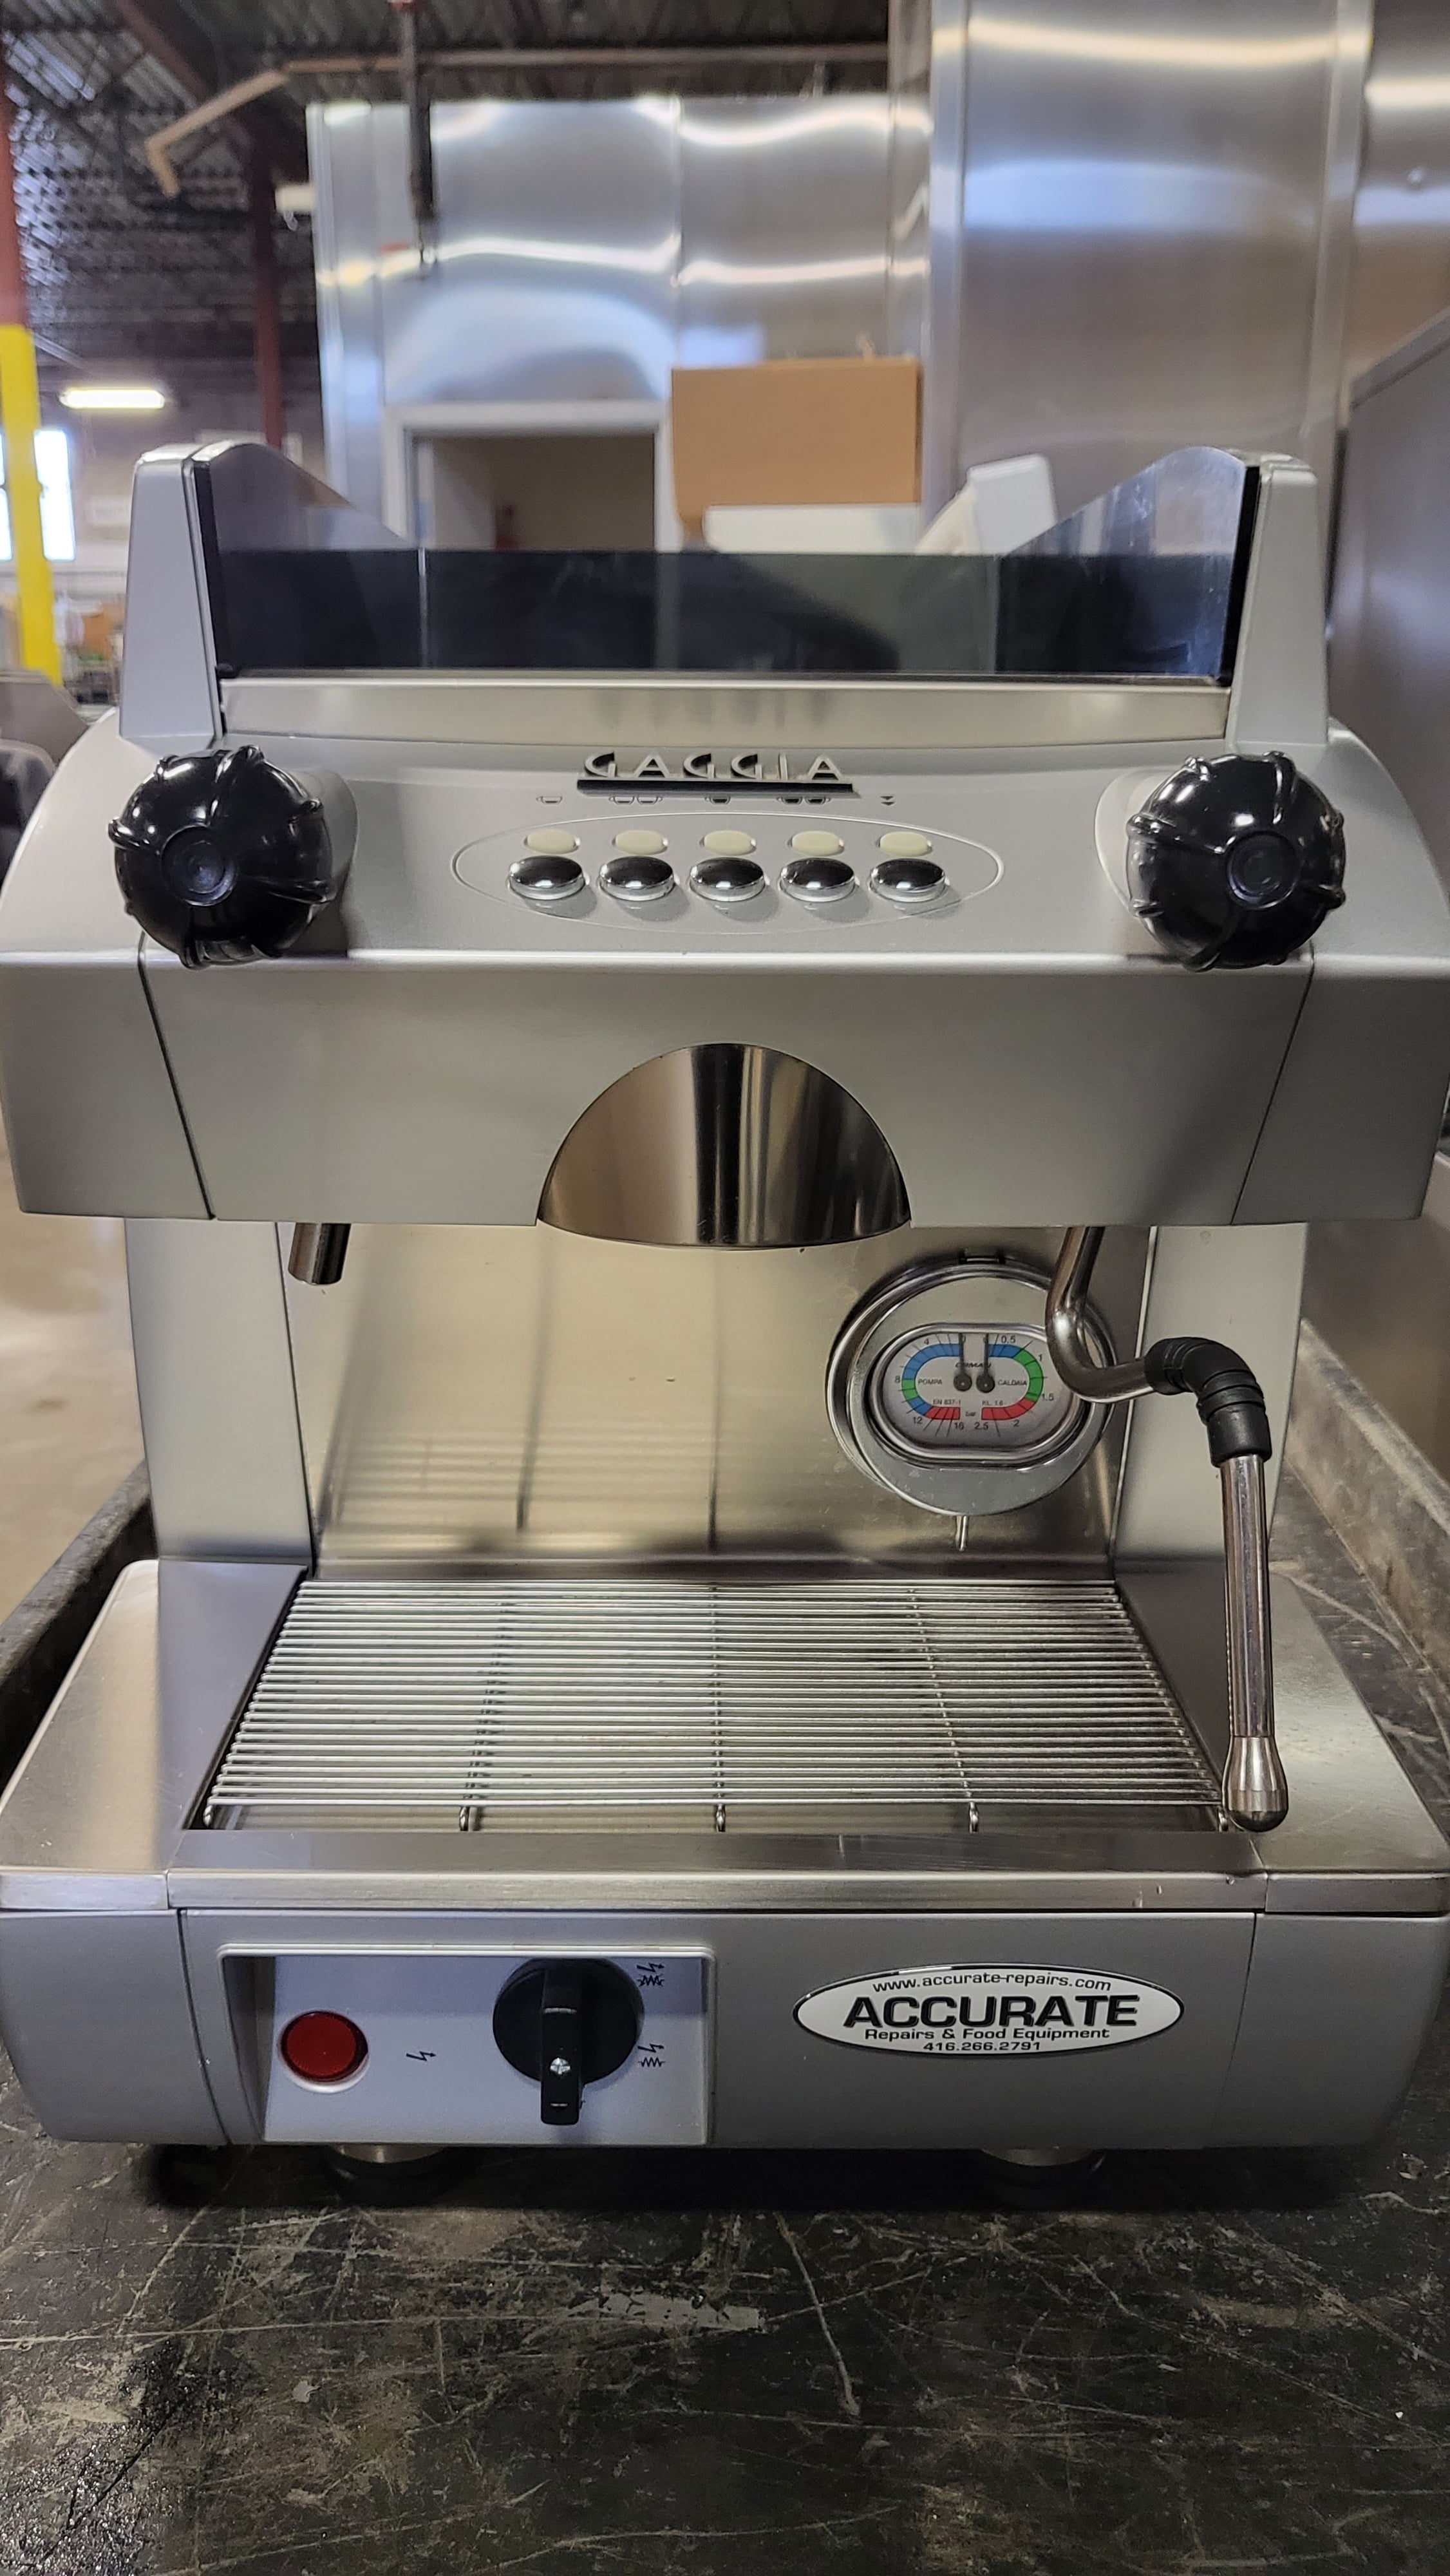 Thumbnail - Gaggia Espresso machine GD Compact 1 GR